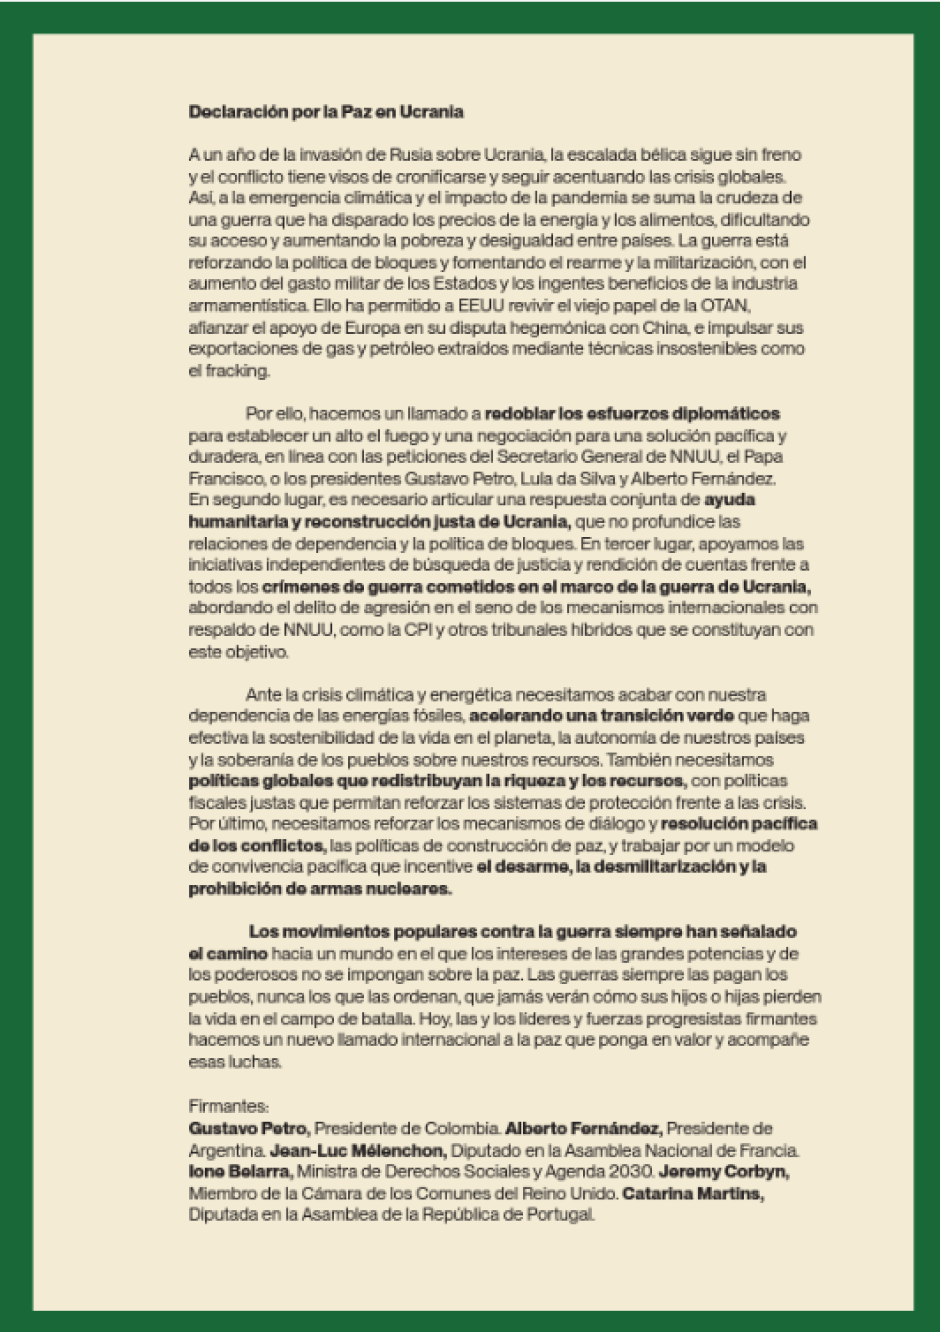 Manifiesto de Podemos y presidentes de Sudamérica por la paz en Ucrania y contra EE.UU